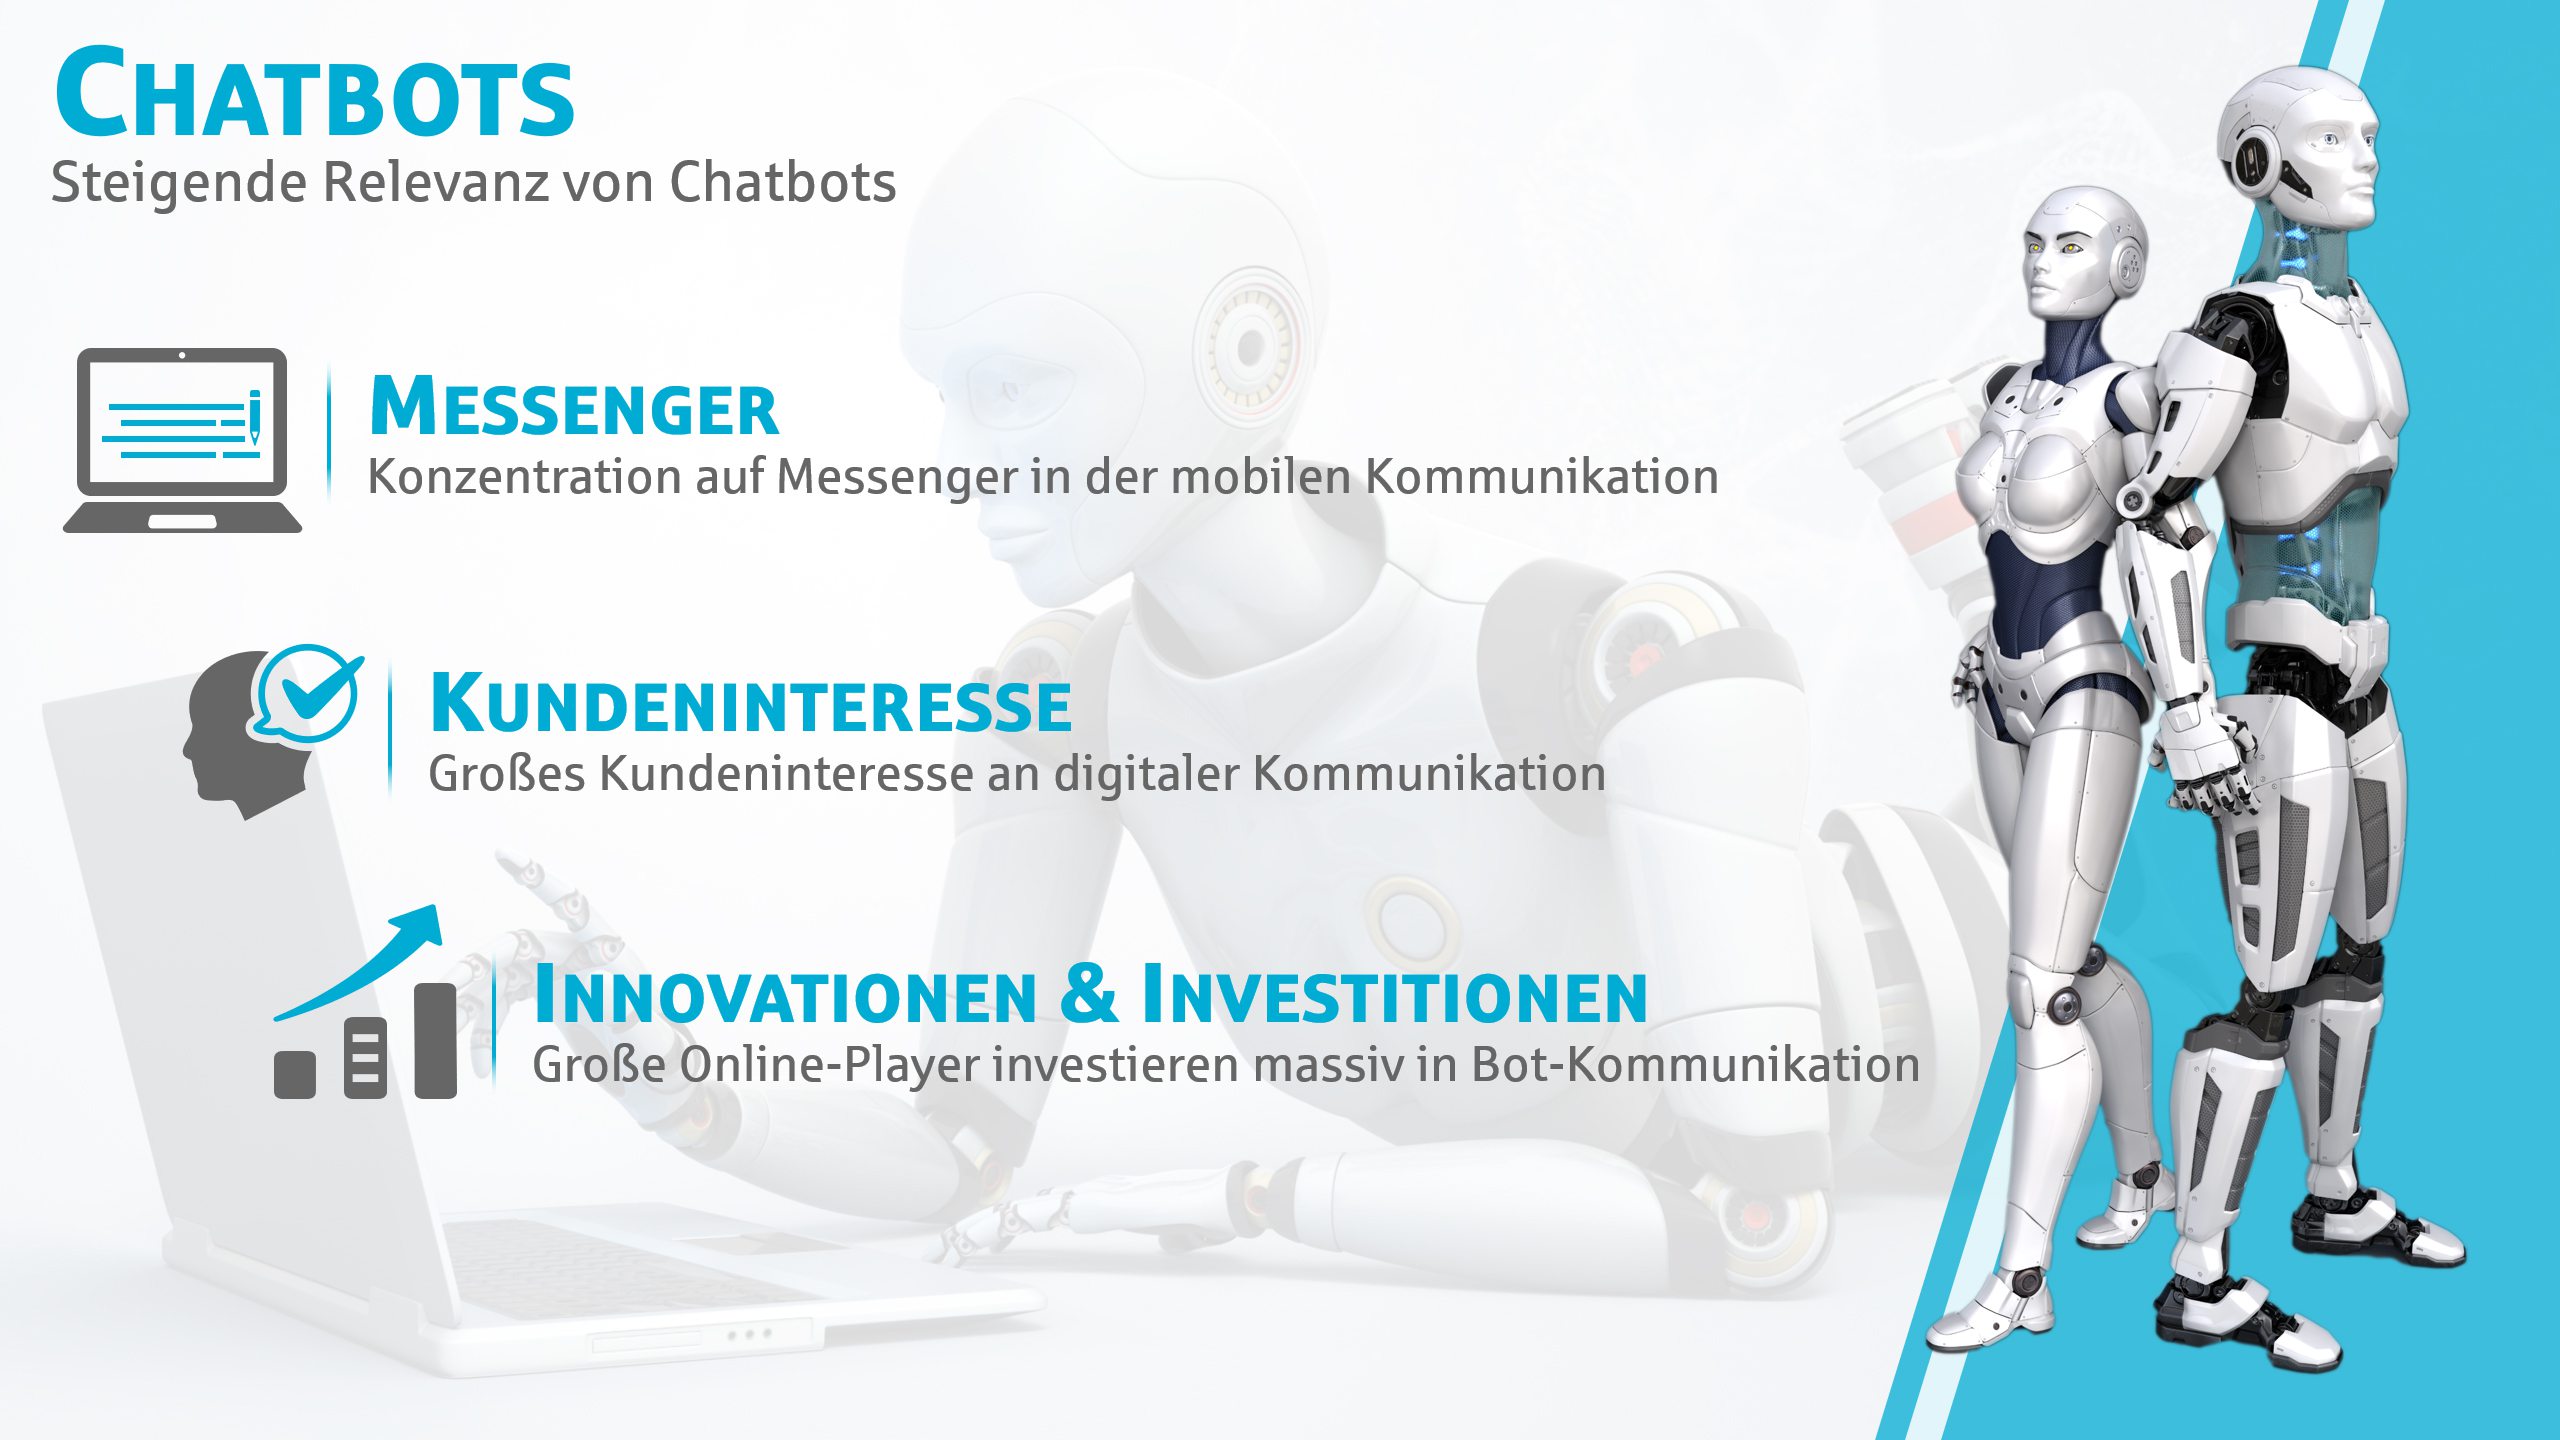 Deutscher Sparkassenverlag PowerPoint Chatbots 02